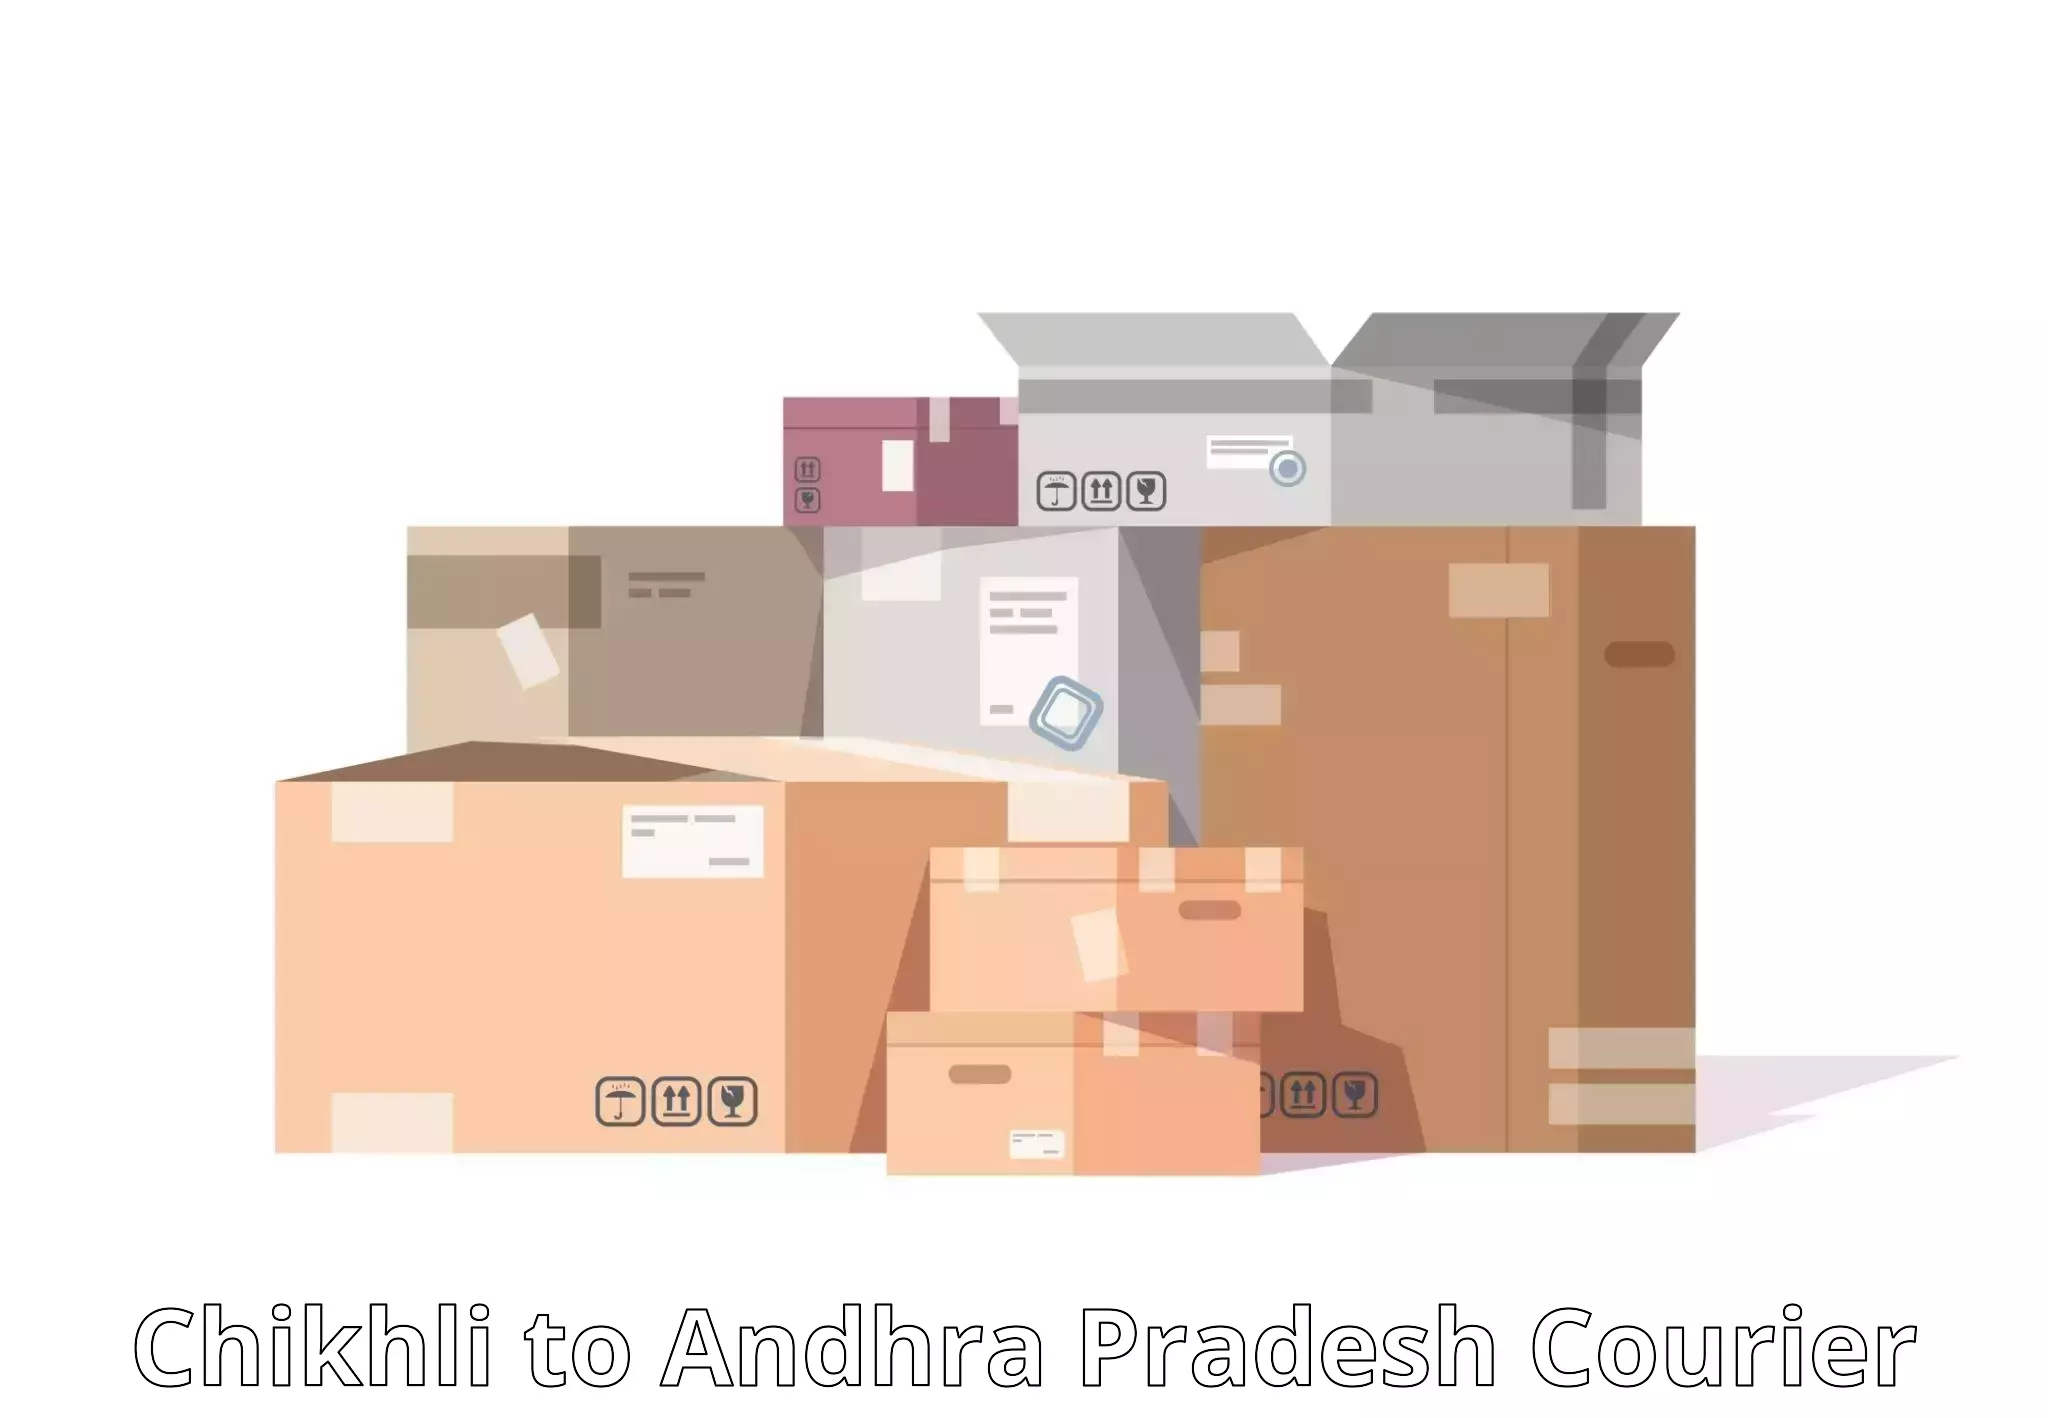 International parcel service Chikhli to Krishna AP